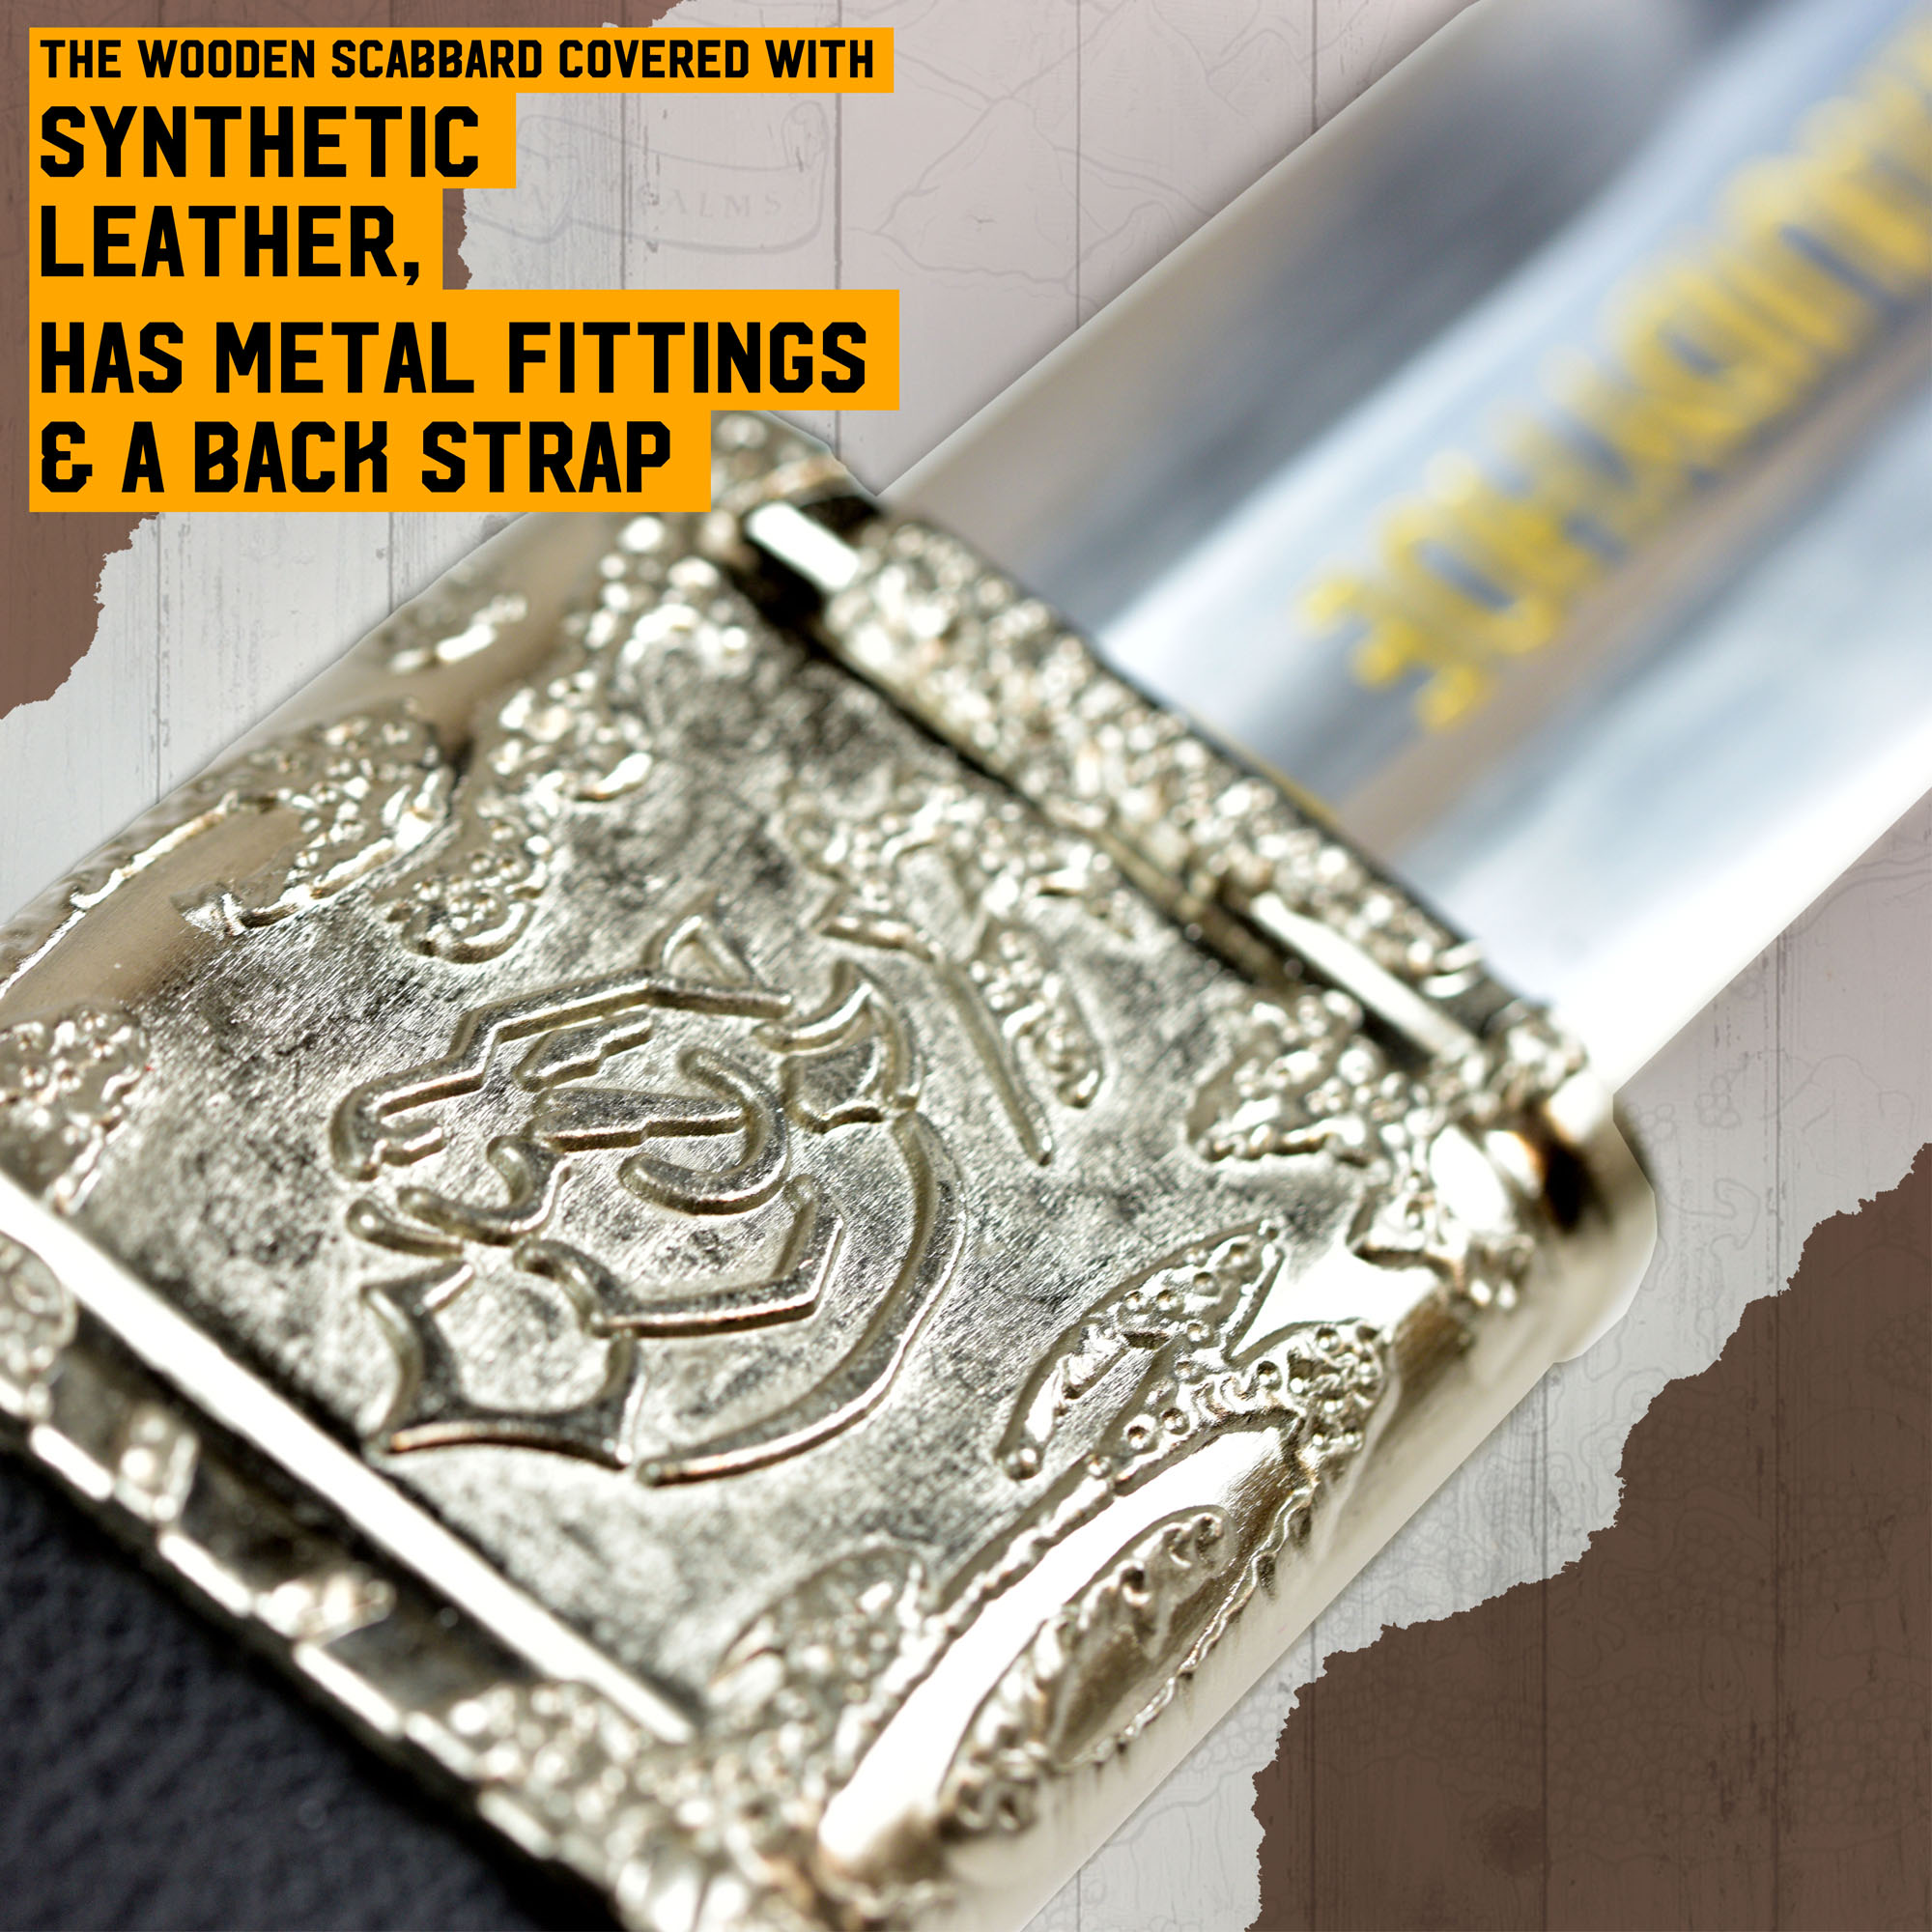 The Witcher Schwert Set - Silber + Stahl Schwert (Bundle aus 41611 und 40659)